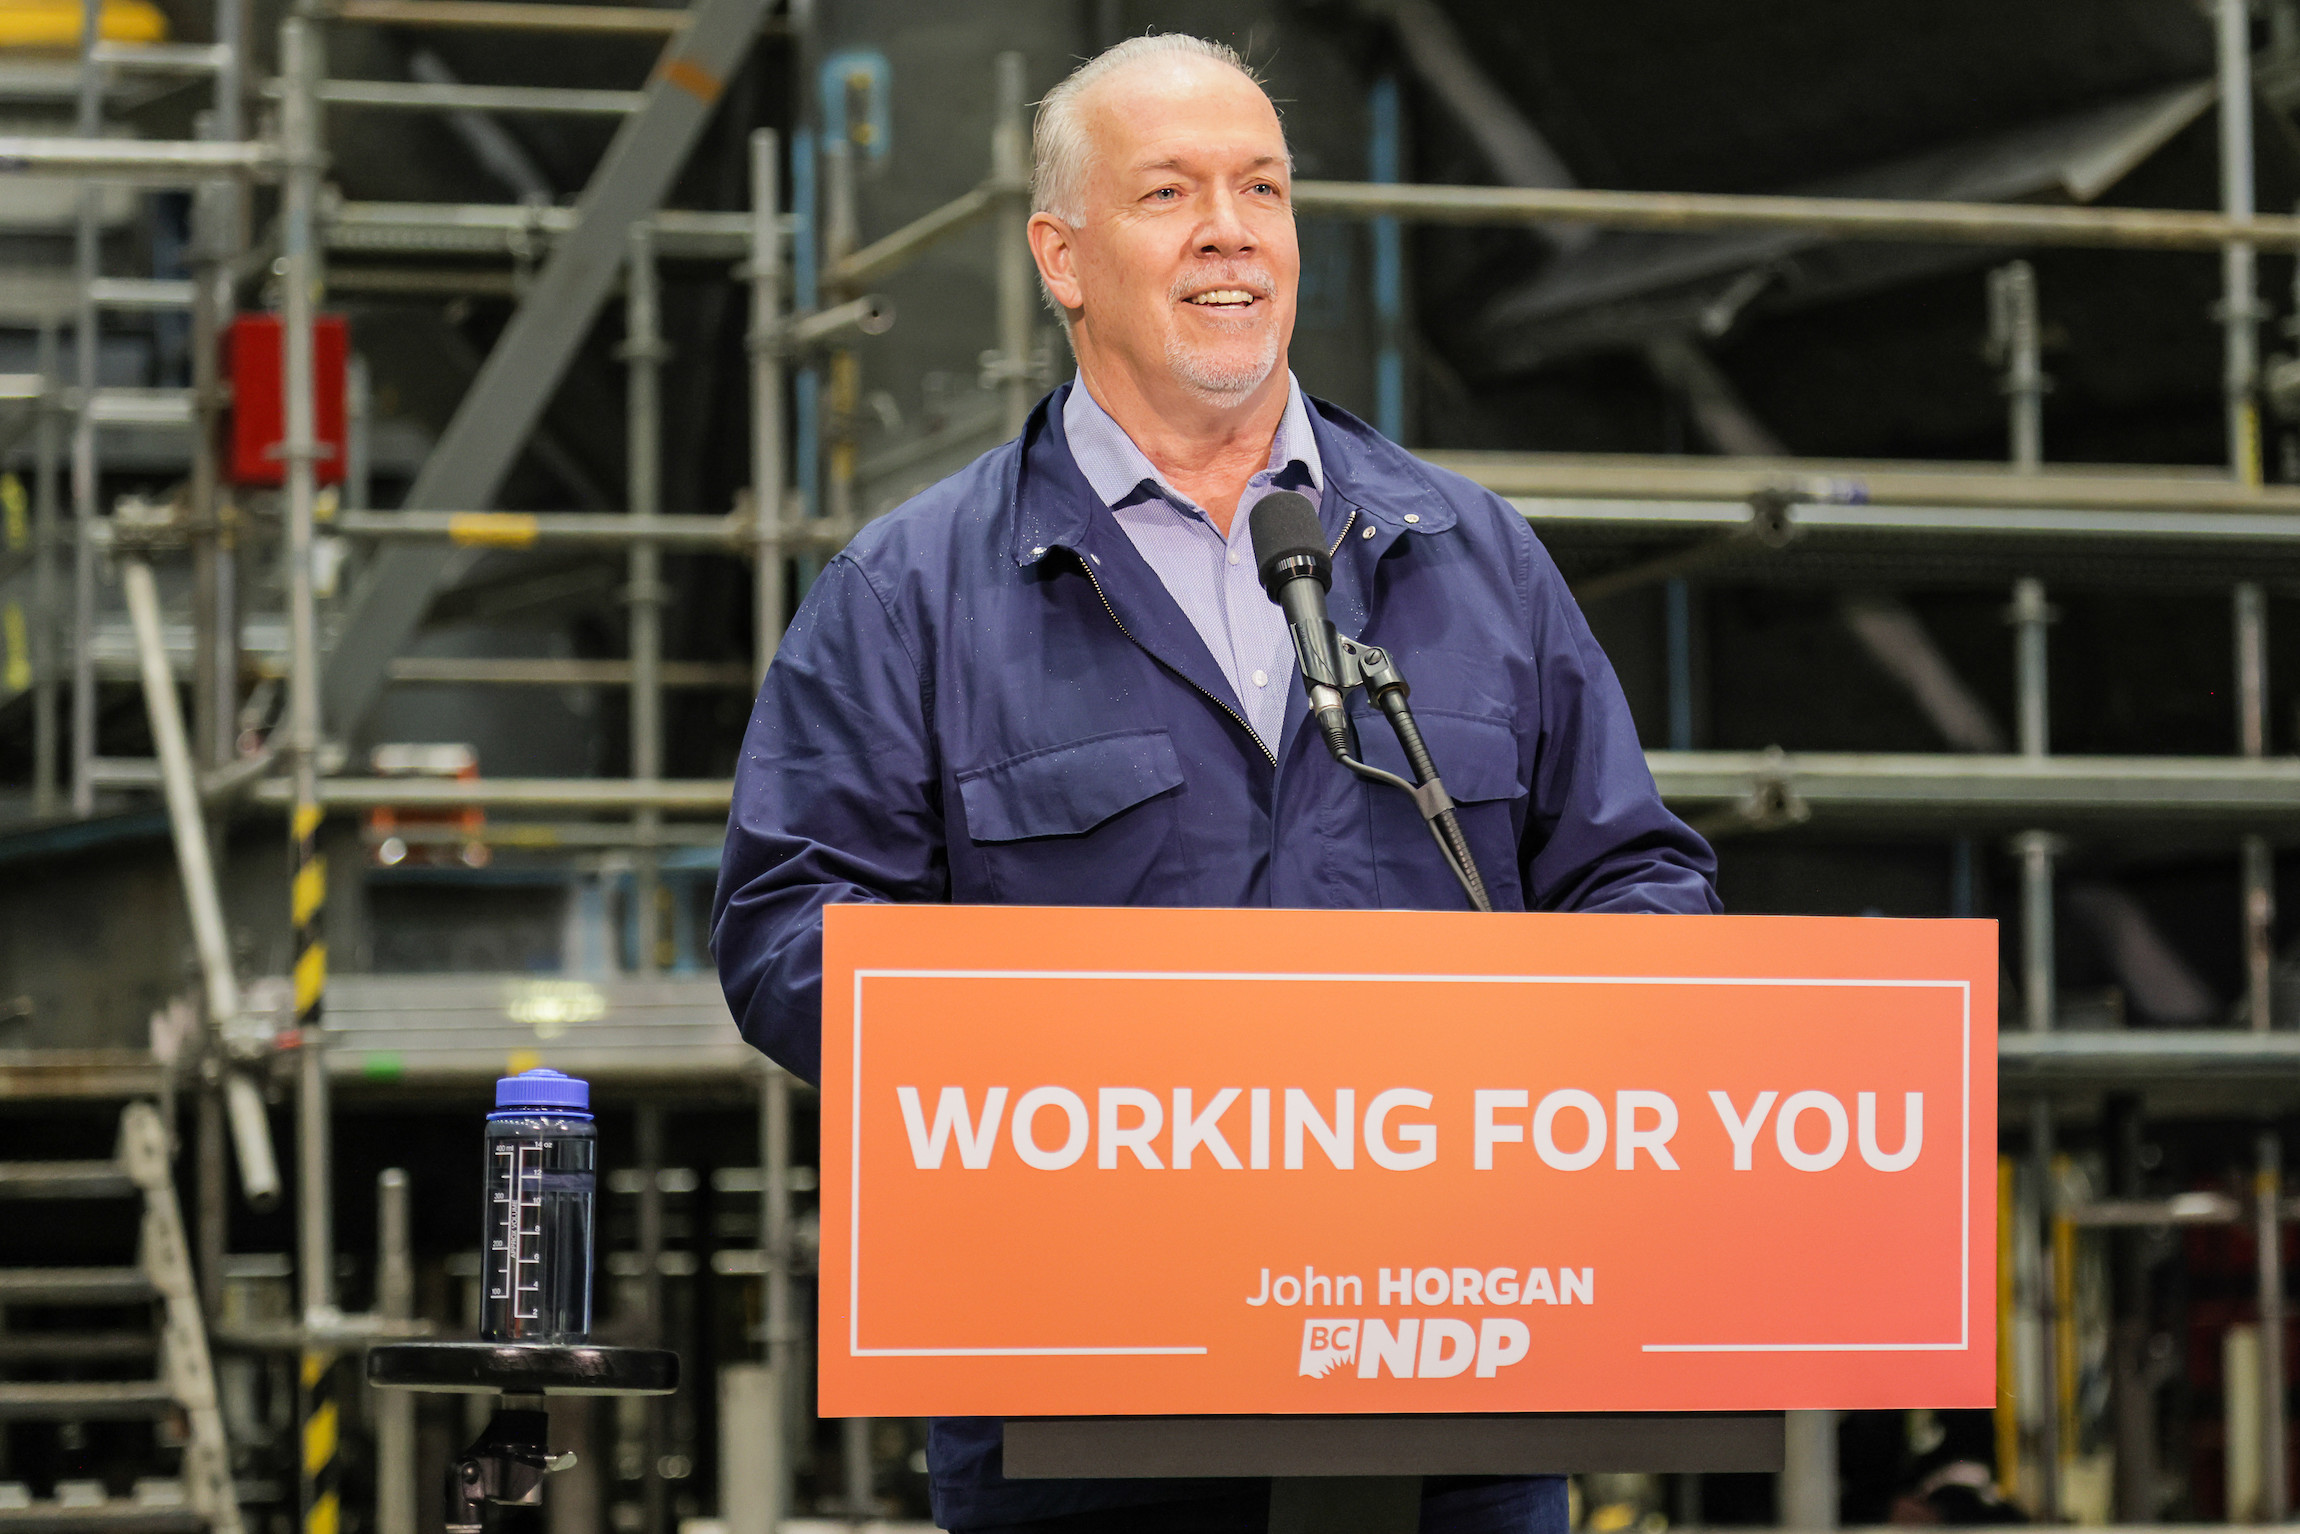 John Horgan BC NDP Leader standing at a podium indoors